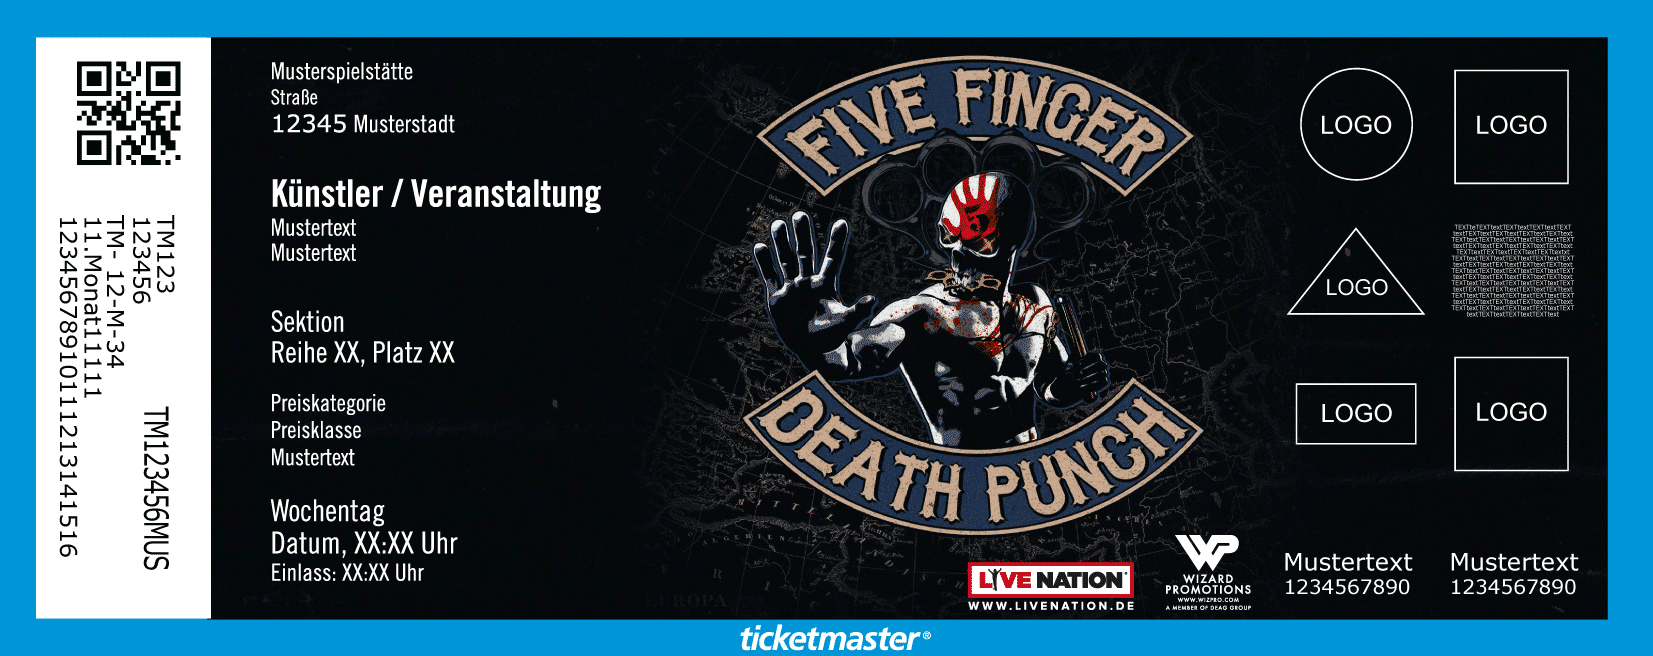 Five Finger Death Punch Presale Code 2020 Five Finger Death Punch Kundigen Mega Tour Fur 2020 An Ticketmaster Blog